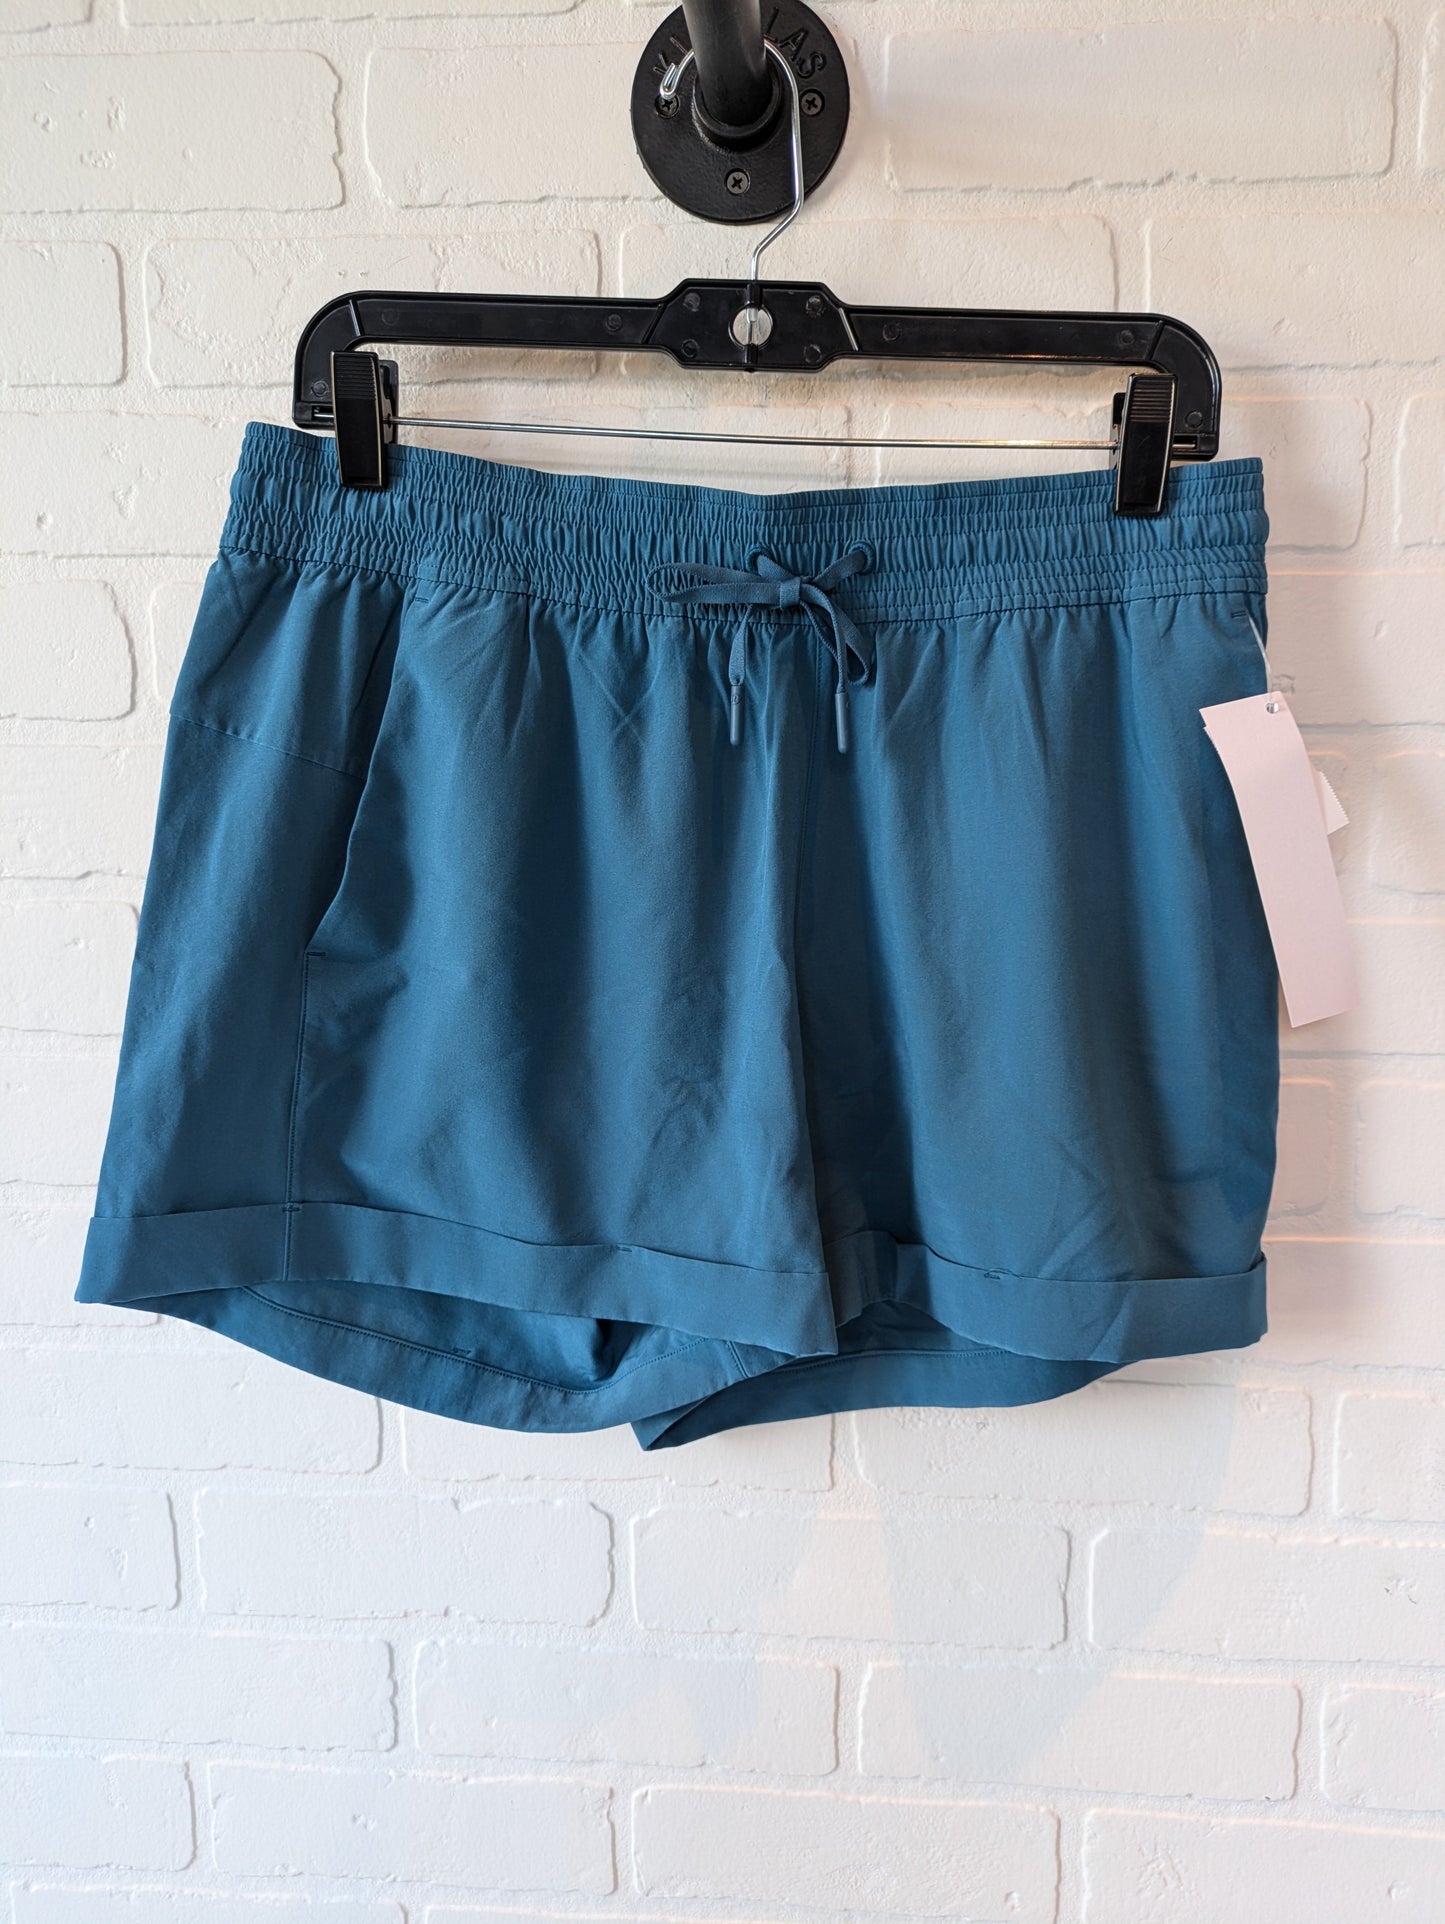 Blue Athletic Shorts Lululemon, Size 10